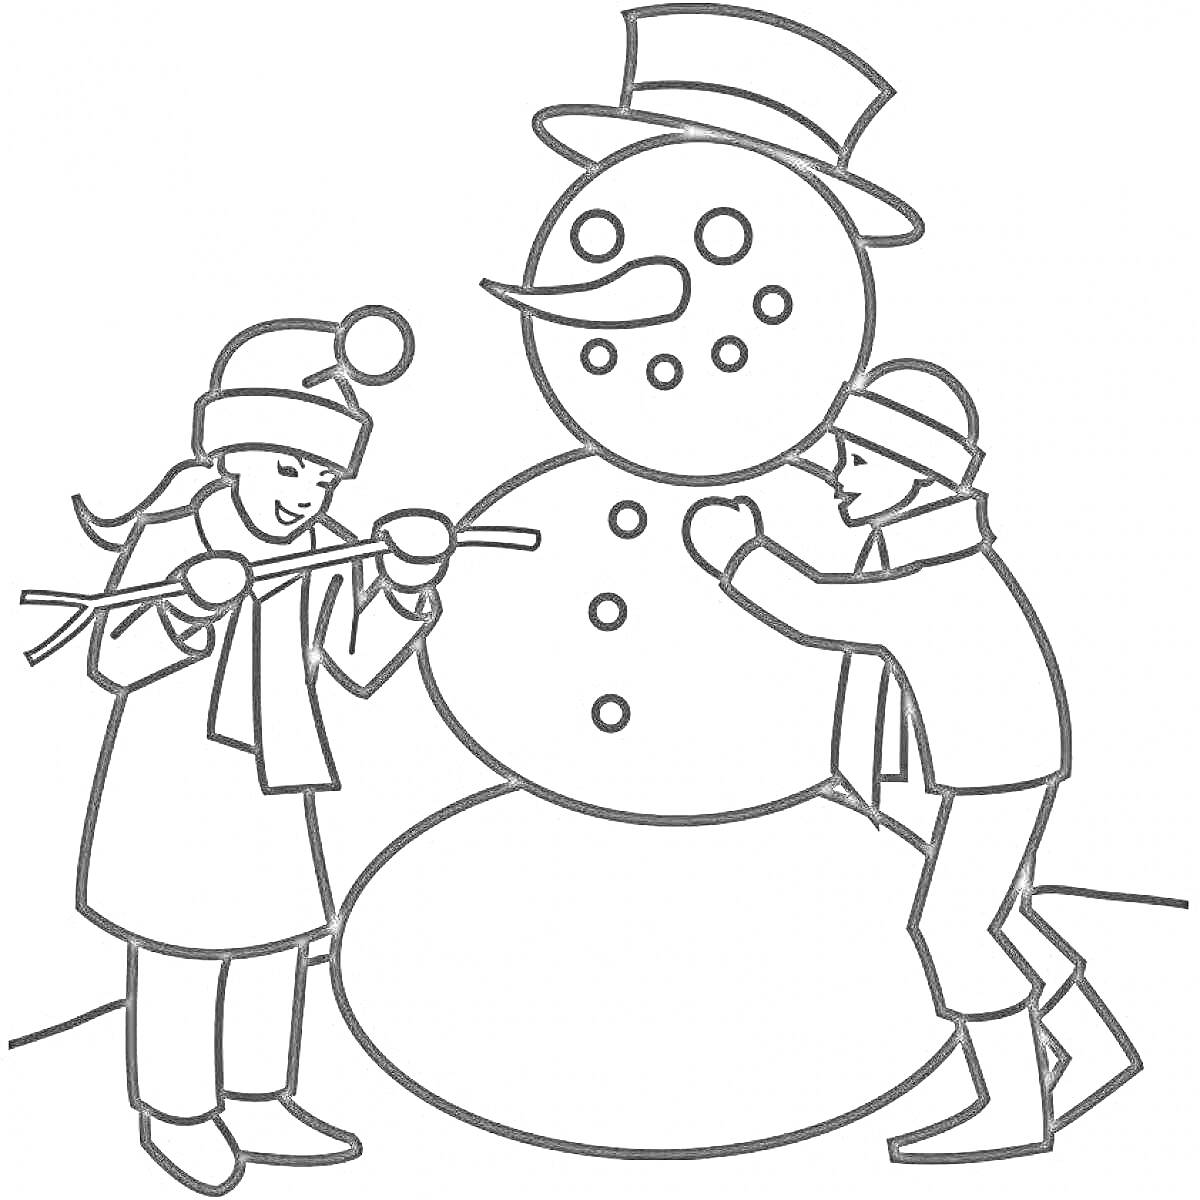 Раскраска Дети мастерят снежную бабу: девочка надевает руки из веток, мальчик лепит огромный снеговик с пуговицами, носом-морковкой, глазами из углей и шляпой.